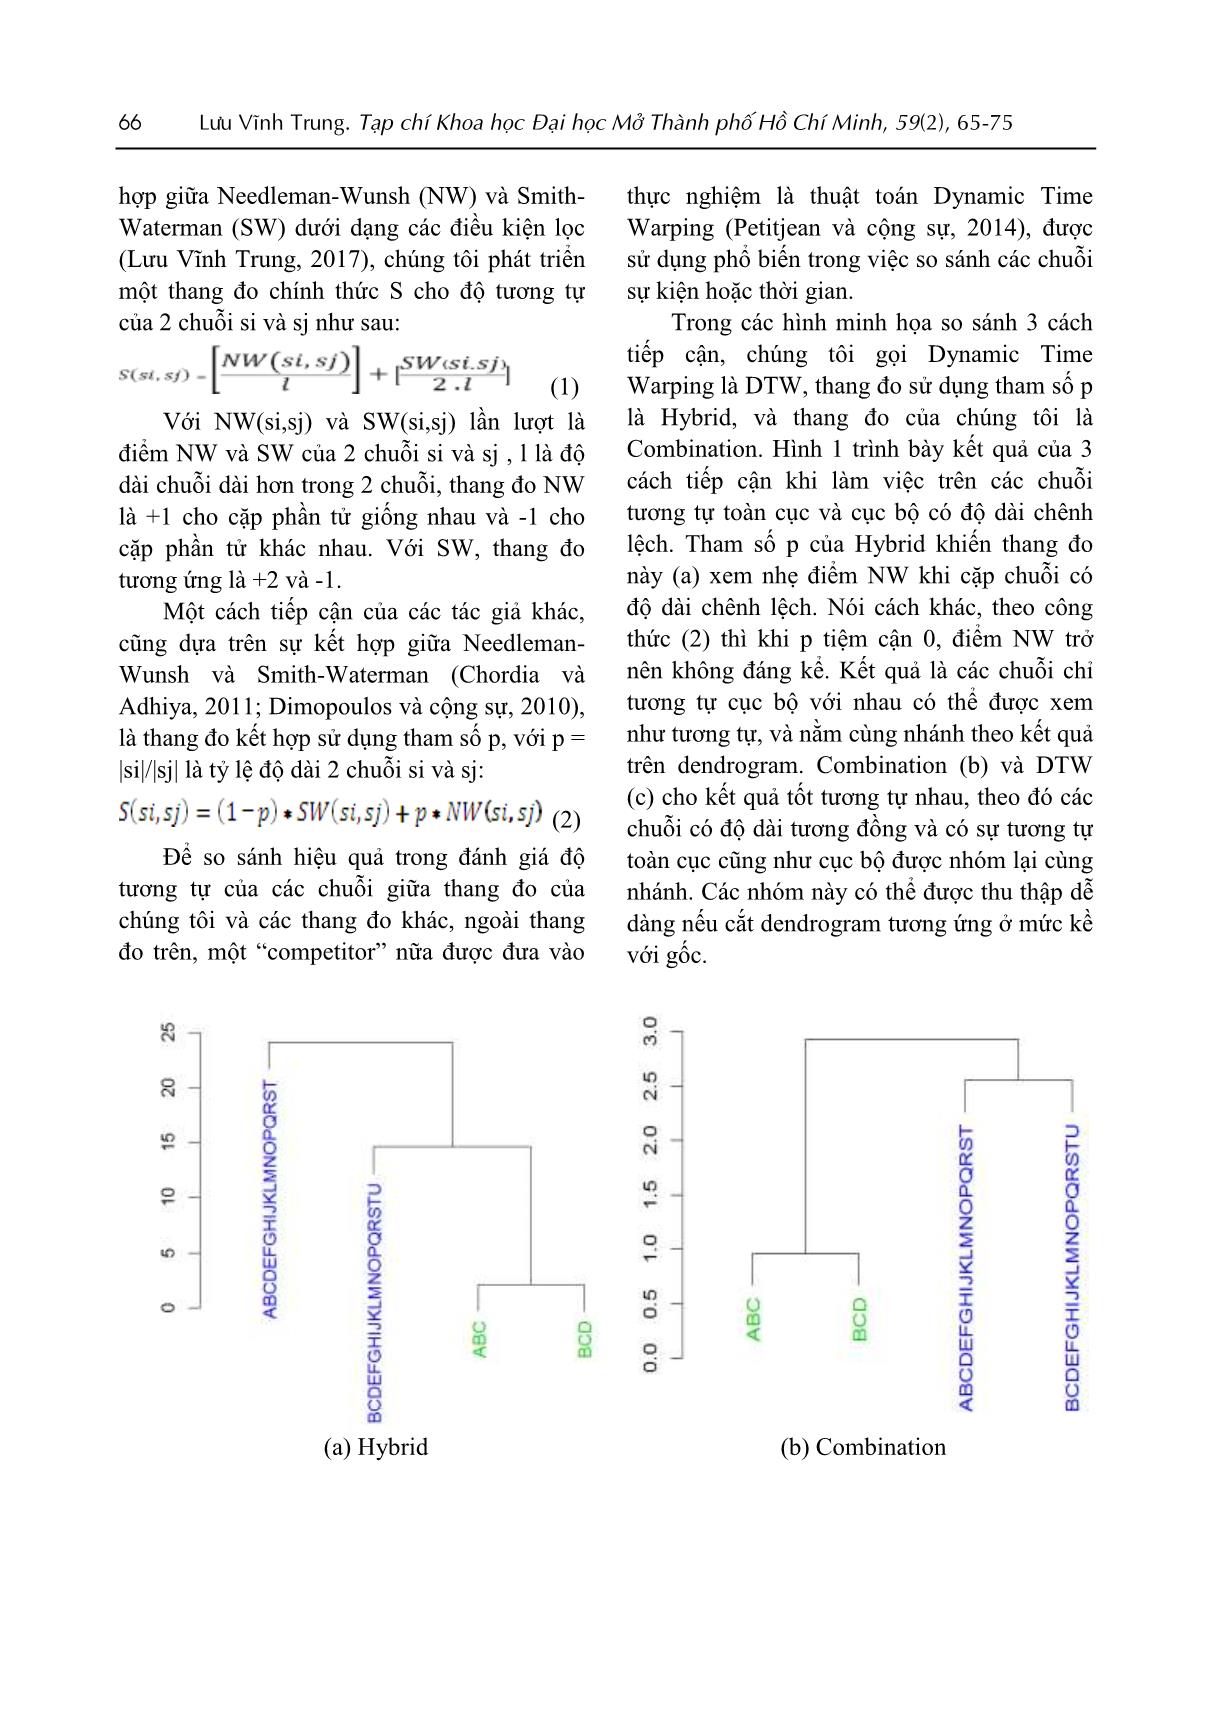 Sử dụng kỹ thuật so sánh chuỗi kết hợp trên các chuỗi có độ dài chênh lệch trang 2